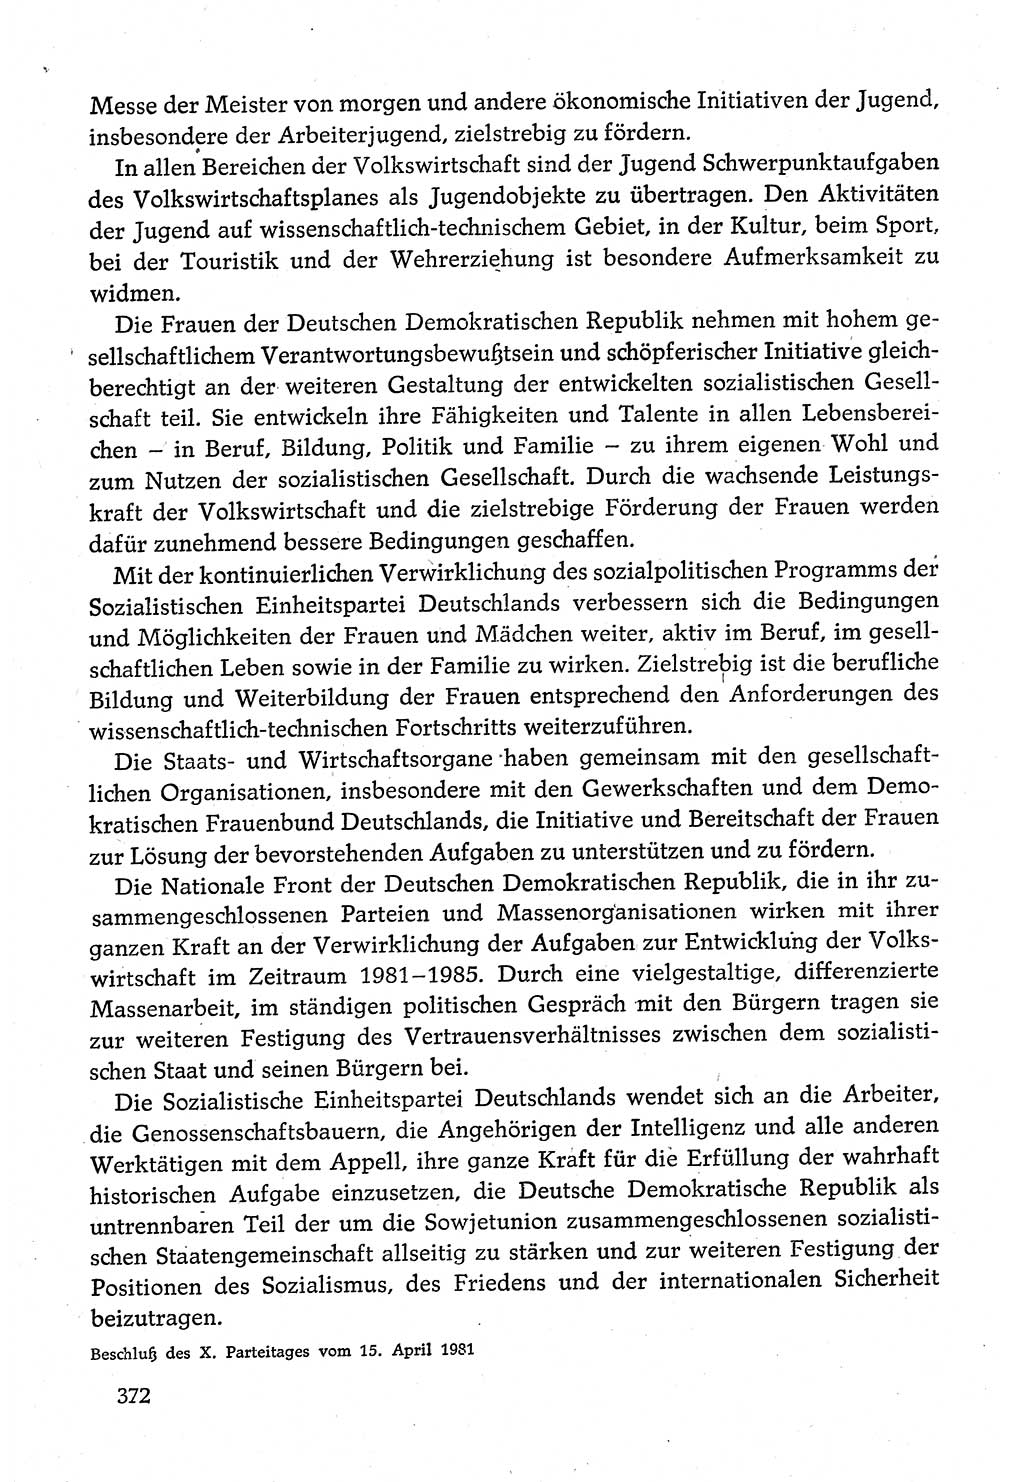 Dokumente der Sozialistischen Einheitspartei Deutschlands (SED) [Deutsche Demokratische Republik (DDR)] 1980-1981, Seite 372 (Dok. SED DDR 1980-1981, S. 372)